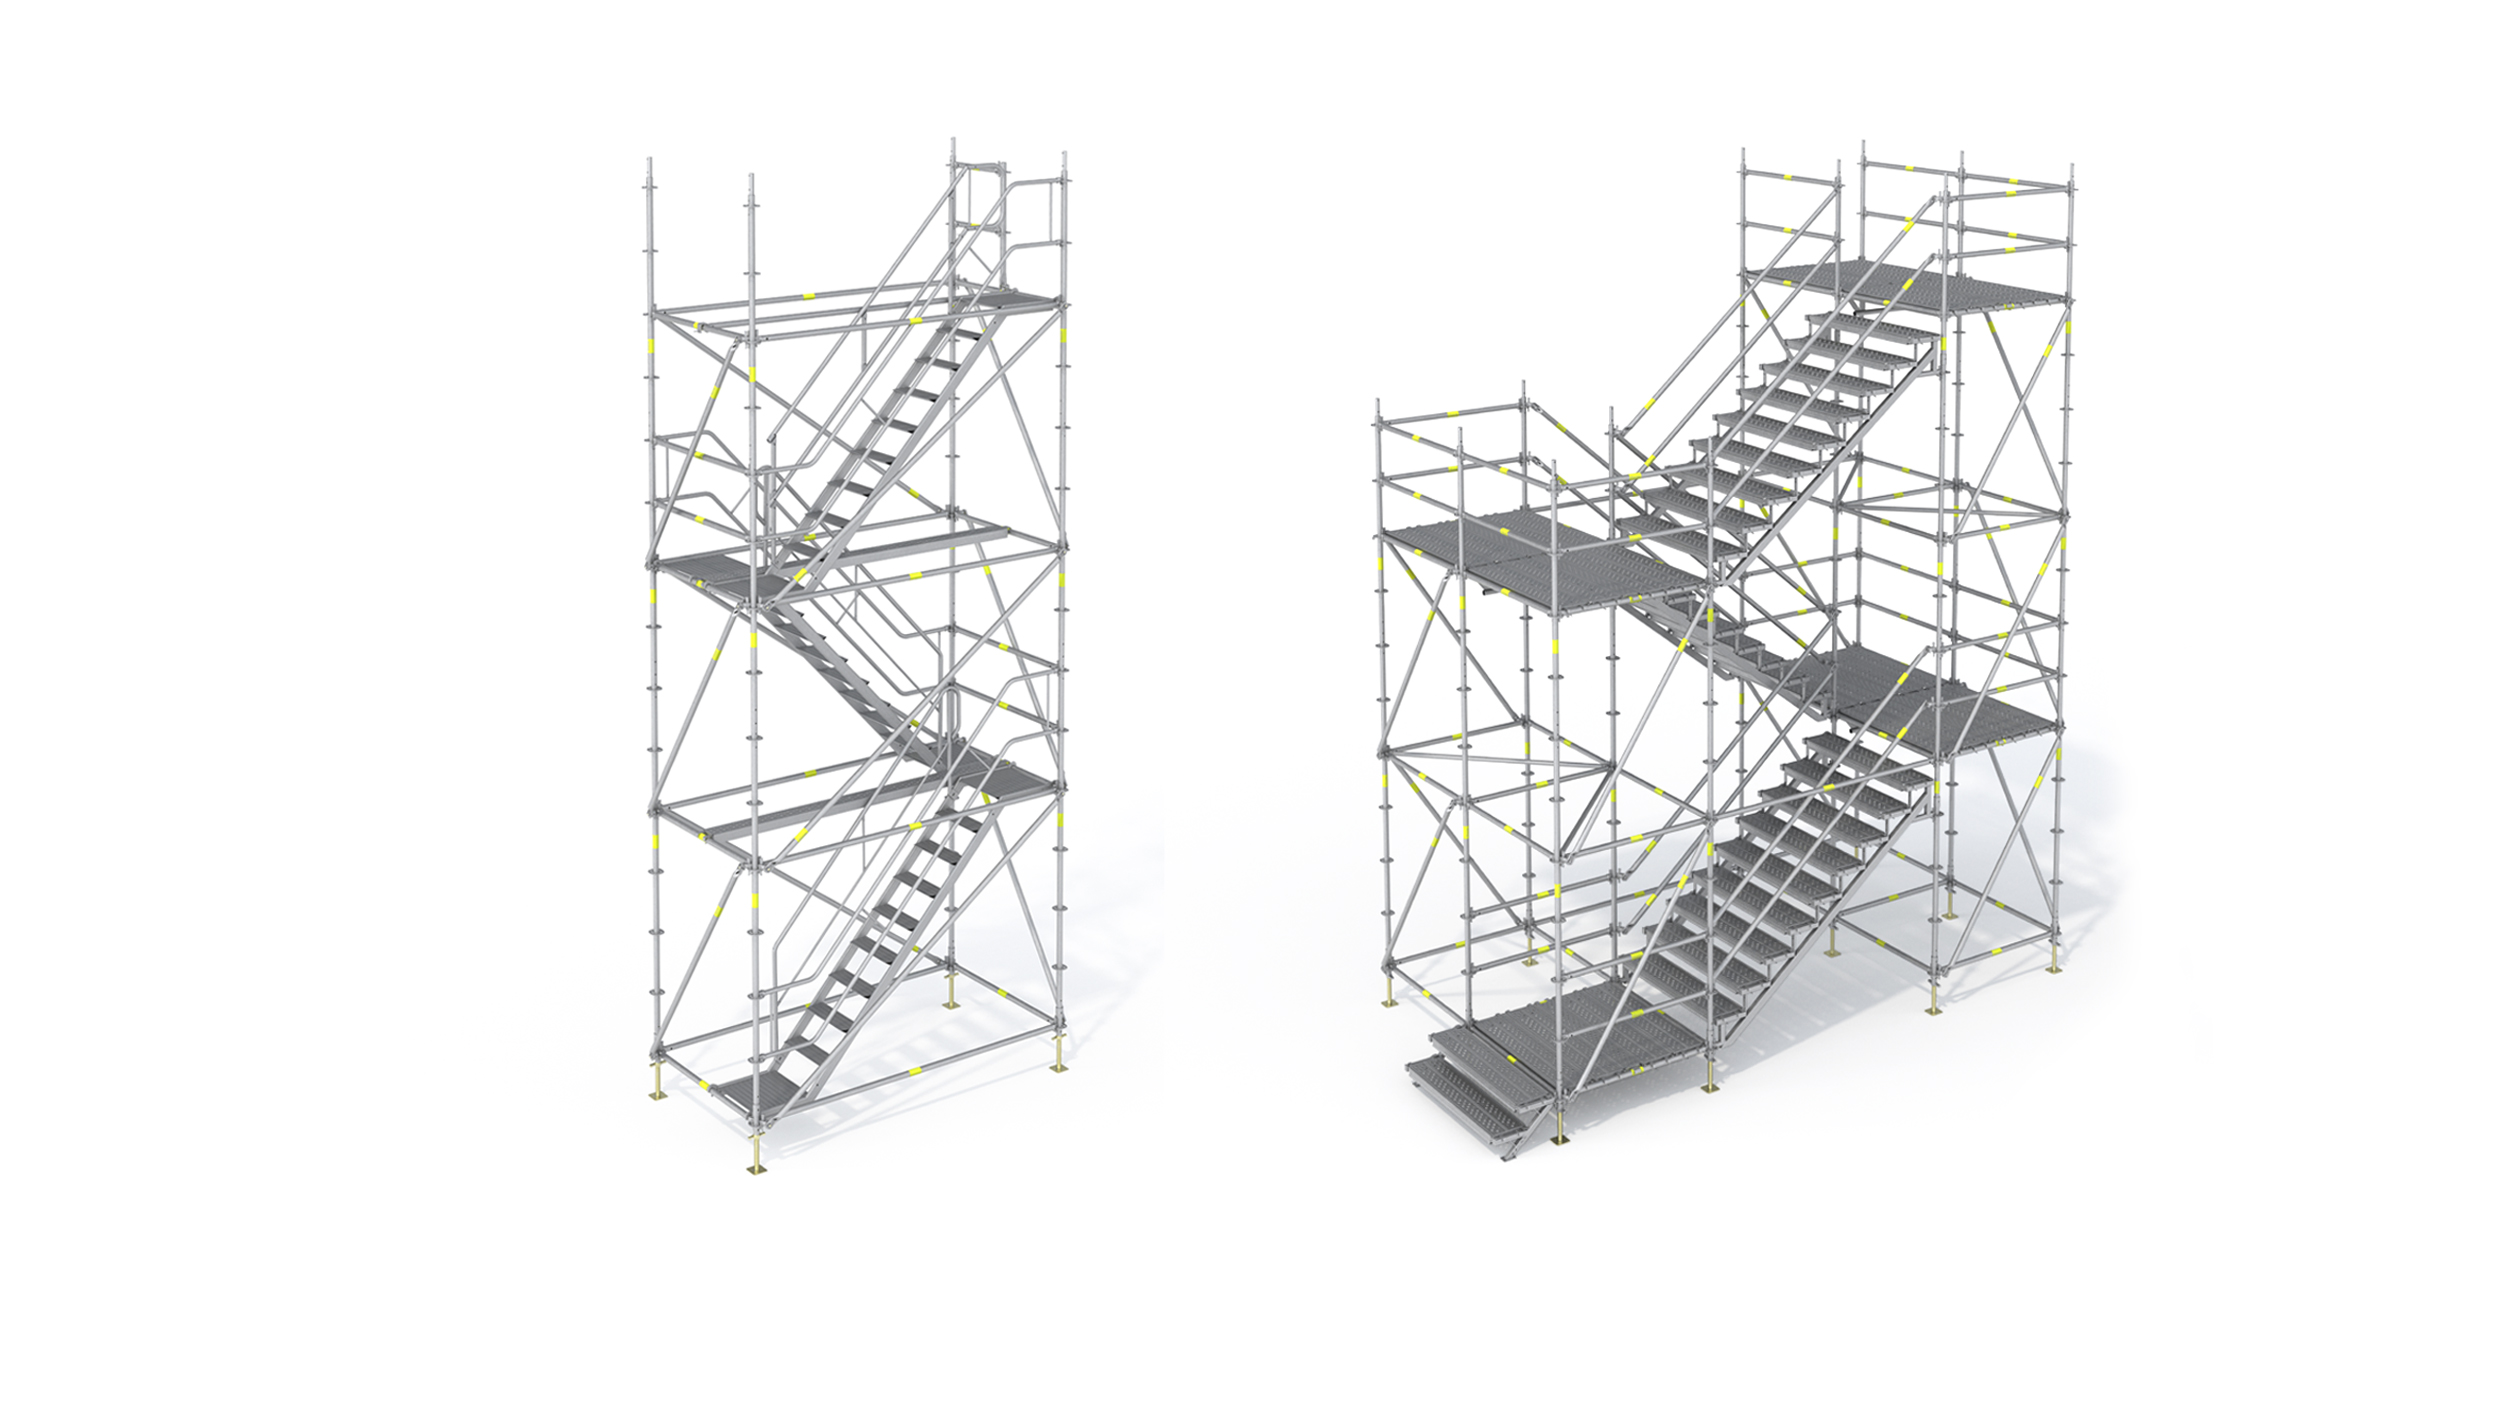 Torres de escalera temporales para el acceso a obra, el desplazamiento de peatones en espacios públicos y la evacuación en caso de emergencia. Permiten distintas configuraciones.